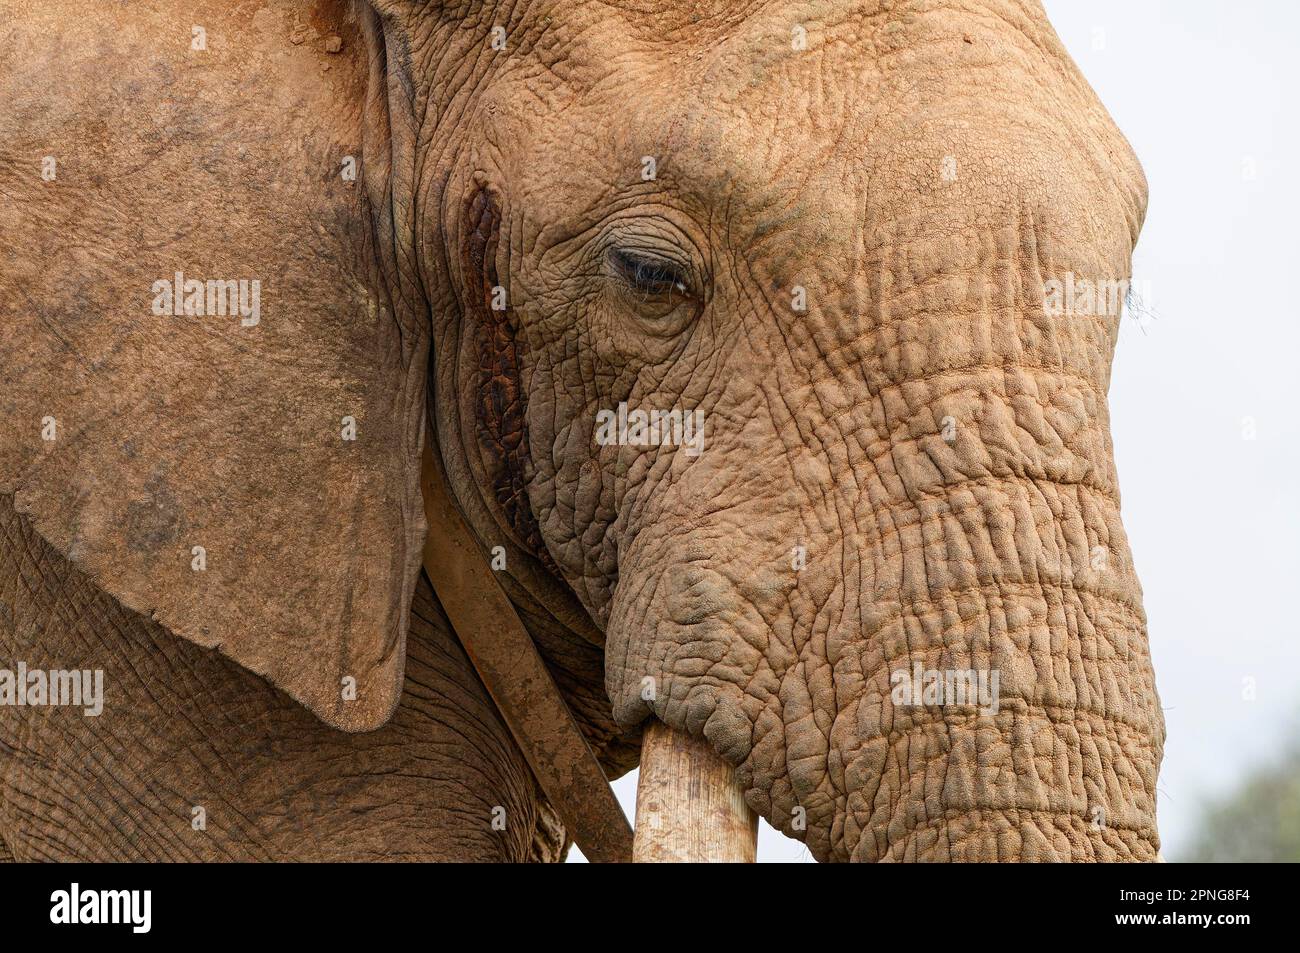 Afrikanischer Buschelefant (Loxodonta africana), erwachsener Mann mit Funkhalsband, Nahaufnahme des Kopfes, Tierporträt, Detail, Addo Elephant Nationalpark, Stockfoto